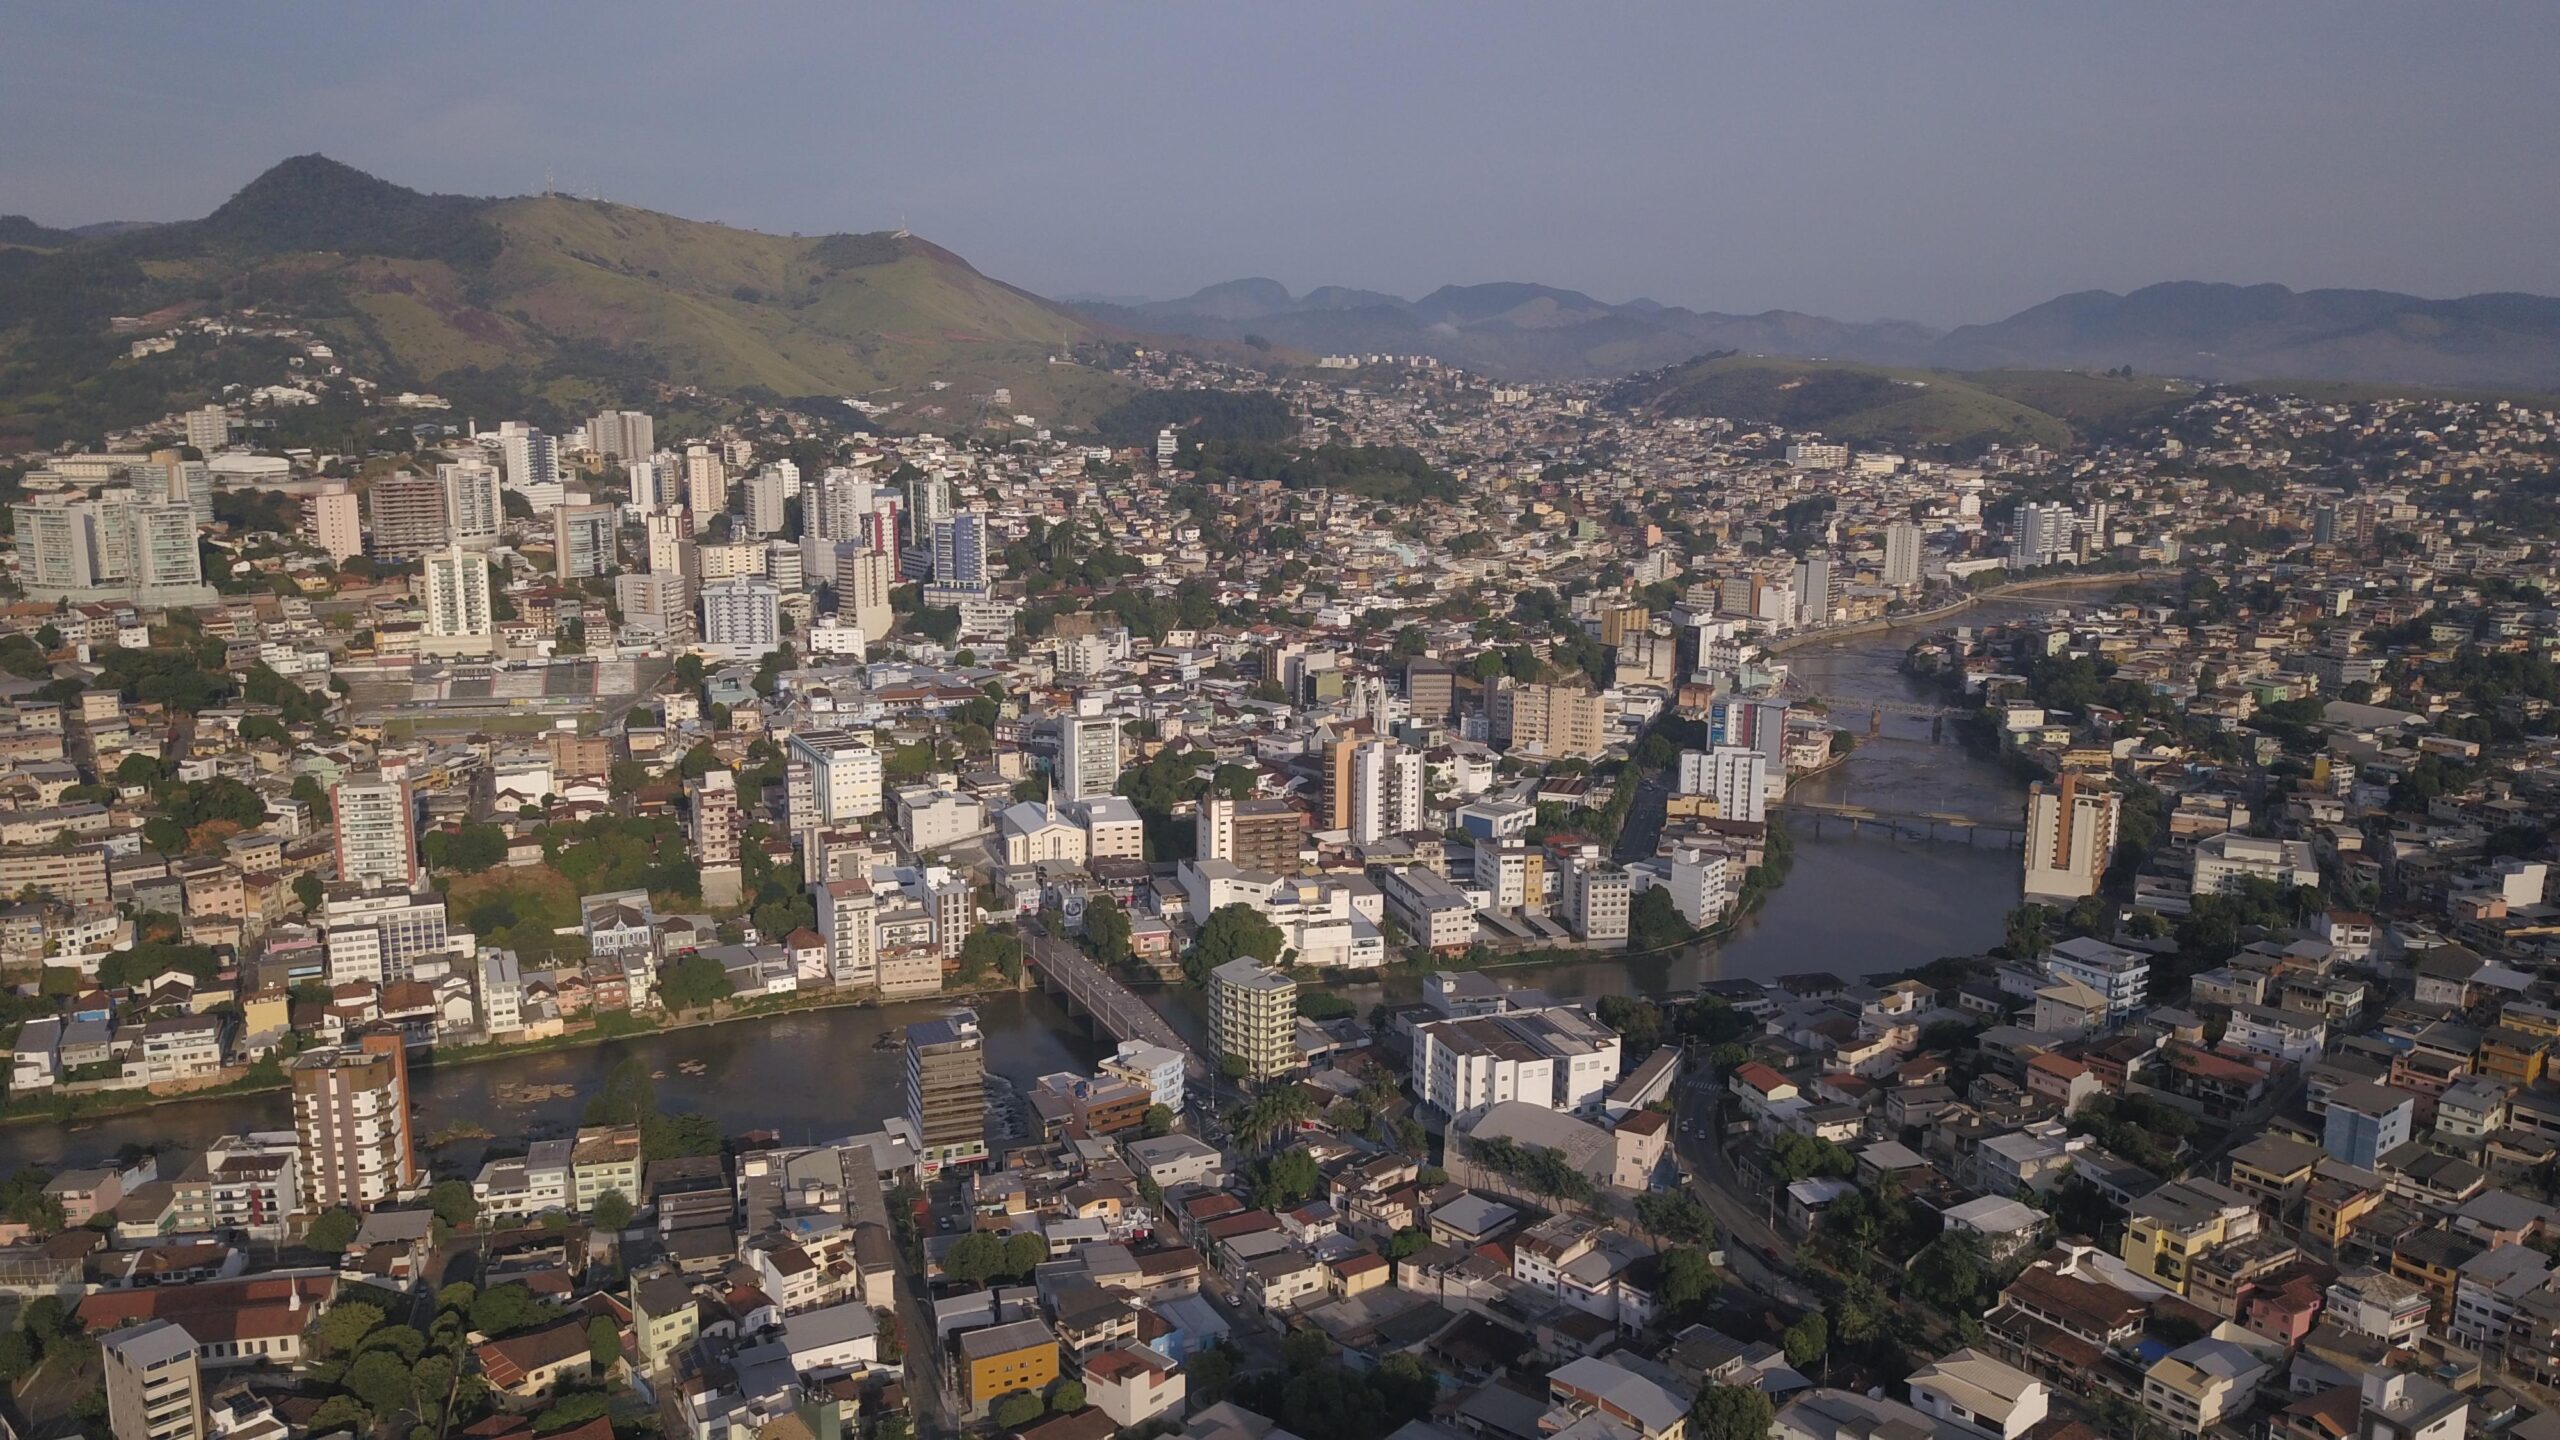 Visão aérea de Cachoeiro de Itapemirim, com a cidade dividida separada pelo rio